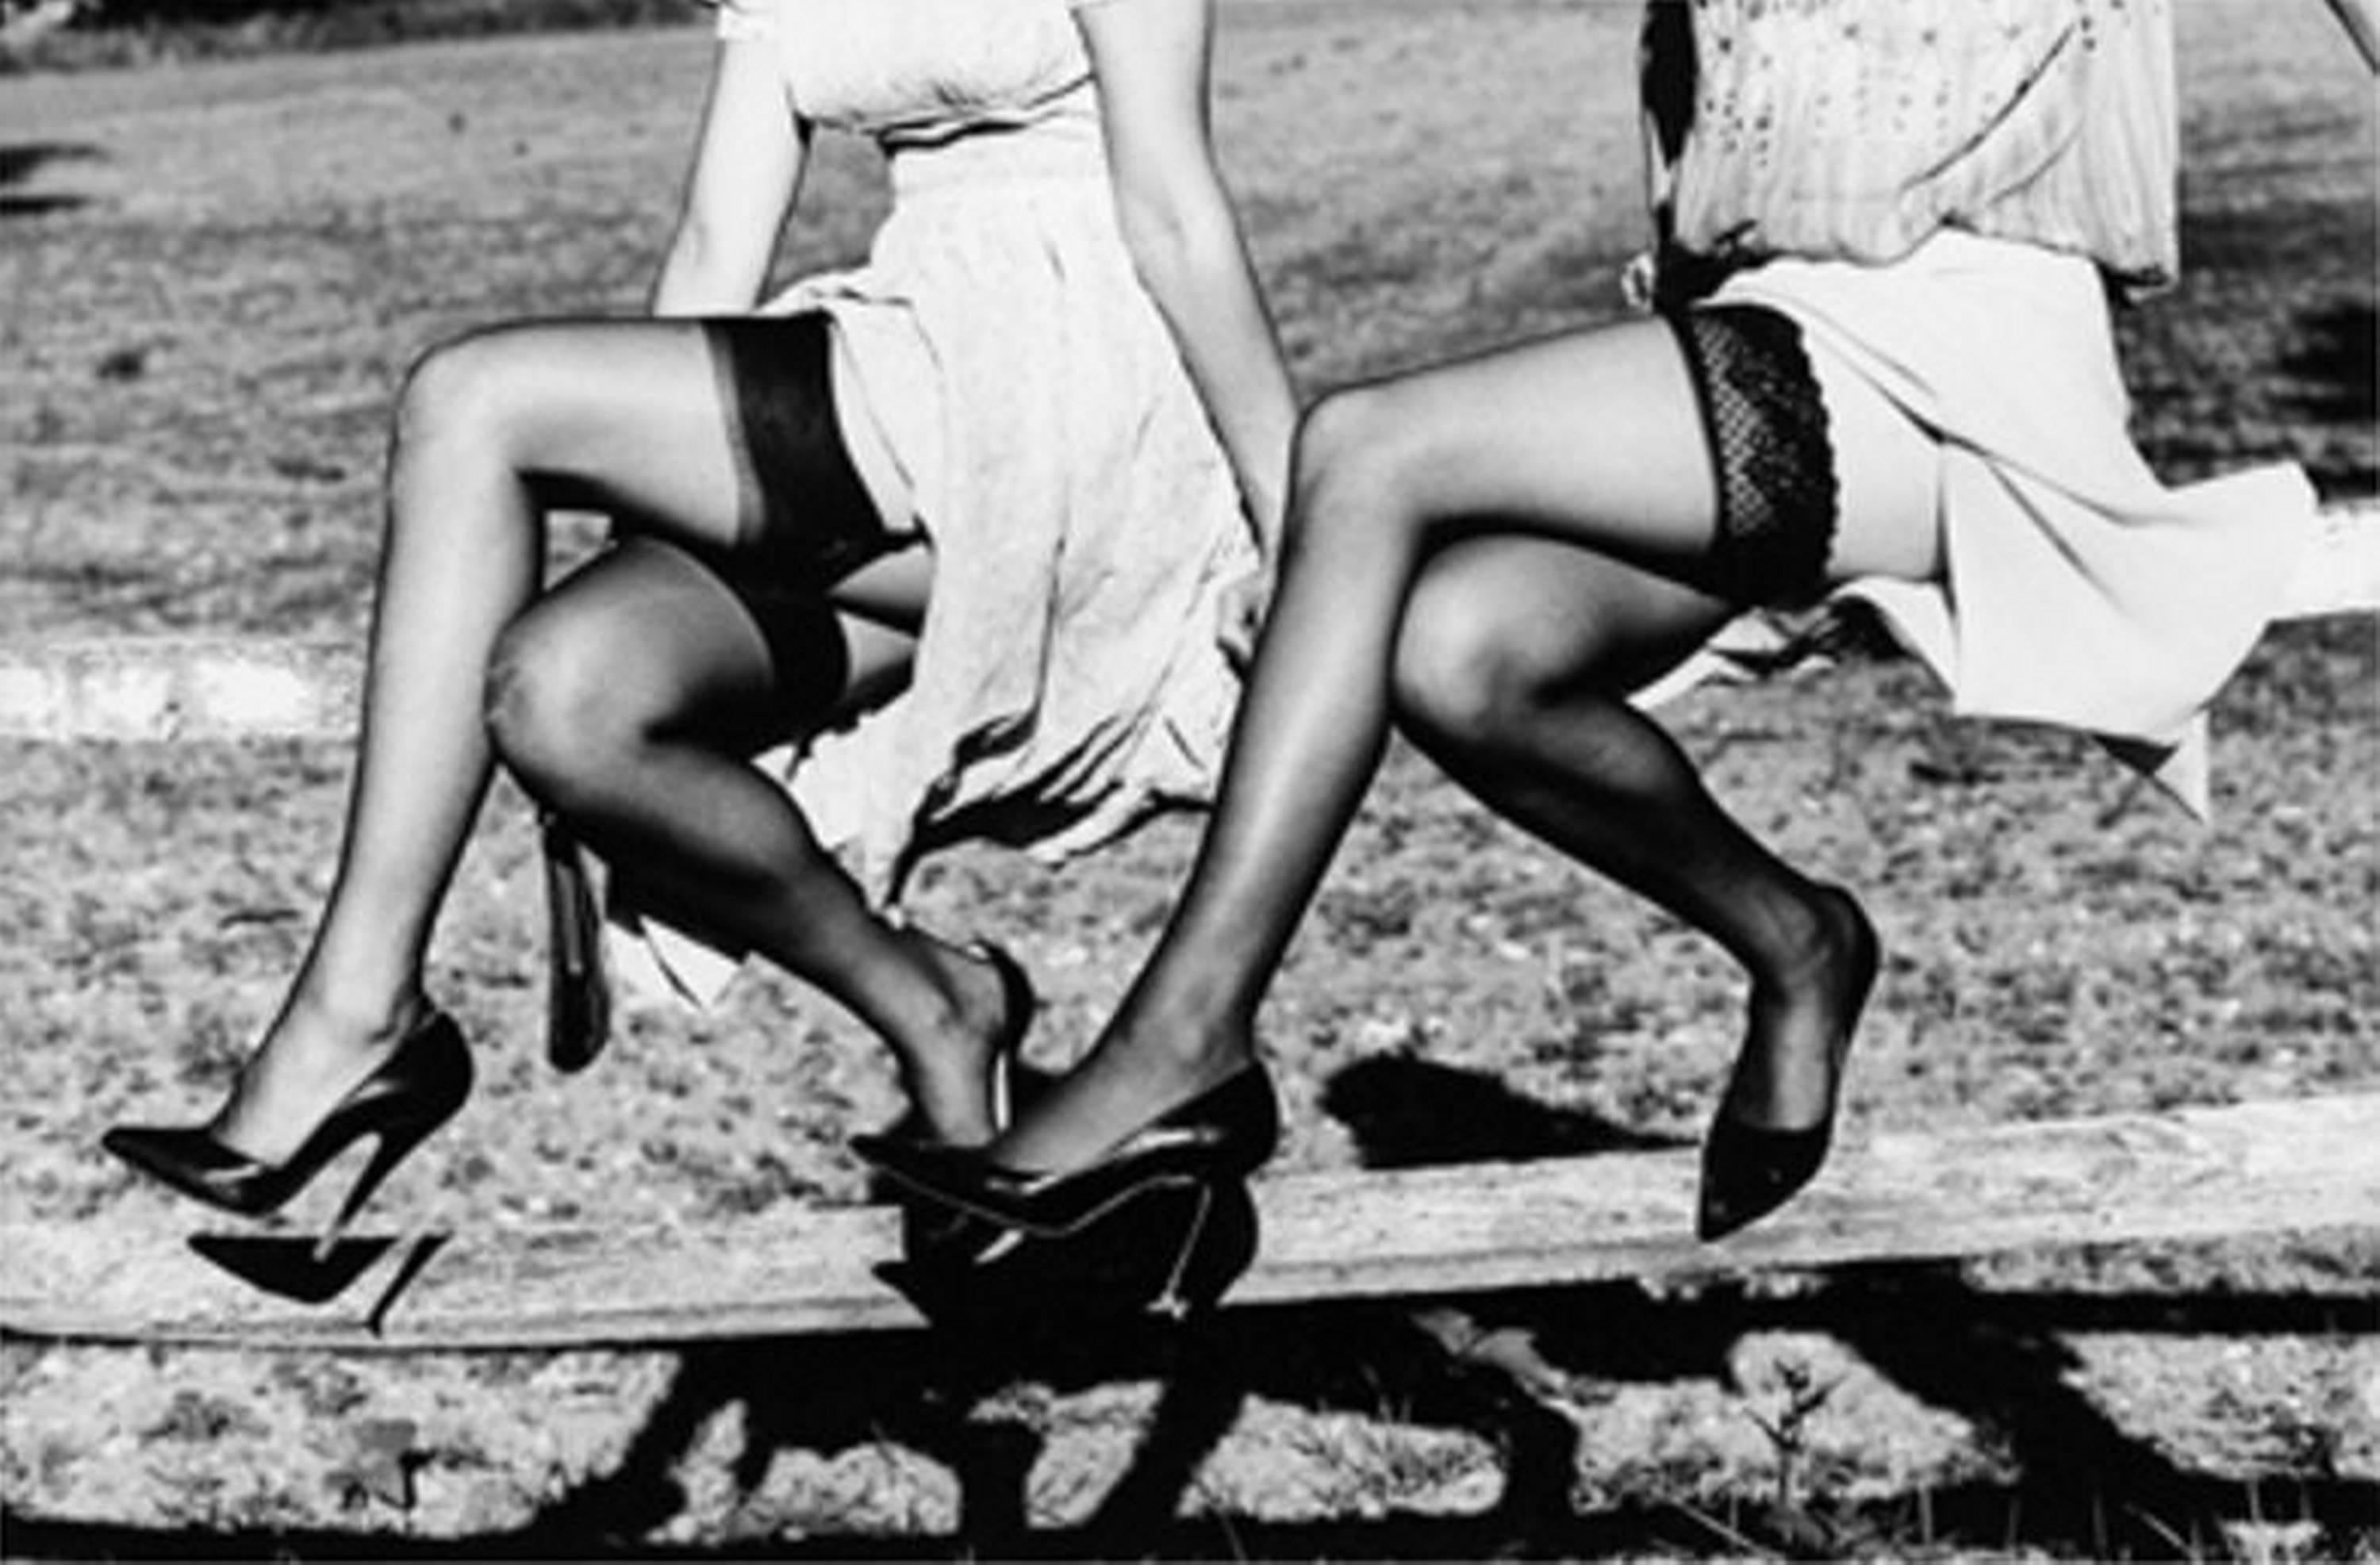 Exposition Leg Show II - Modèles en Stockings assis sur une clôture, photographie d'art, 2002